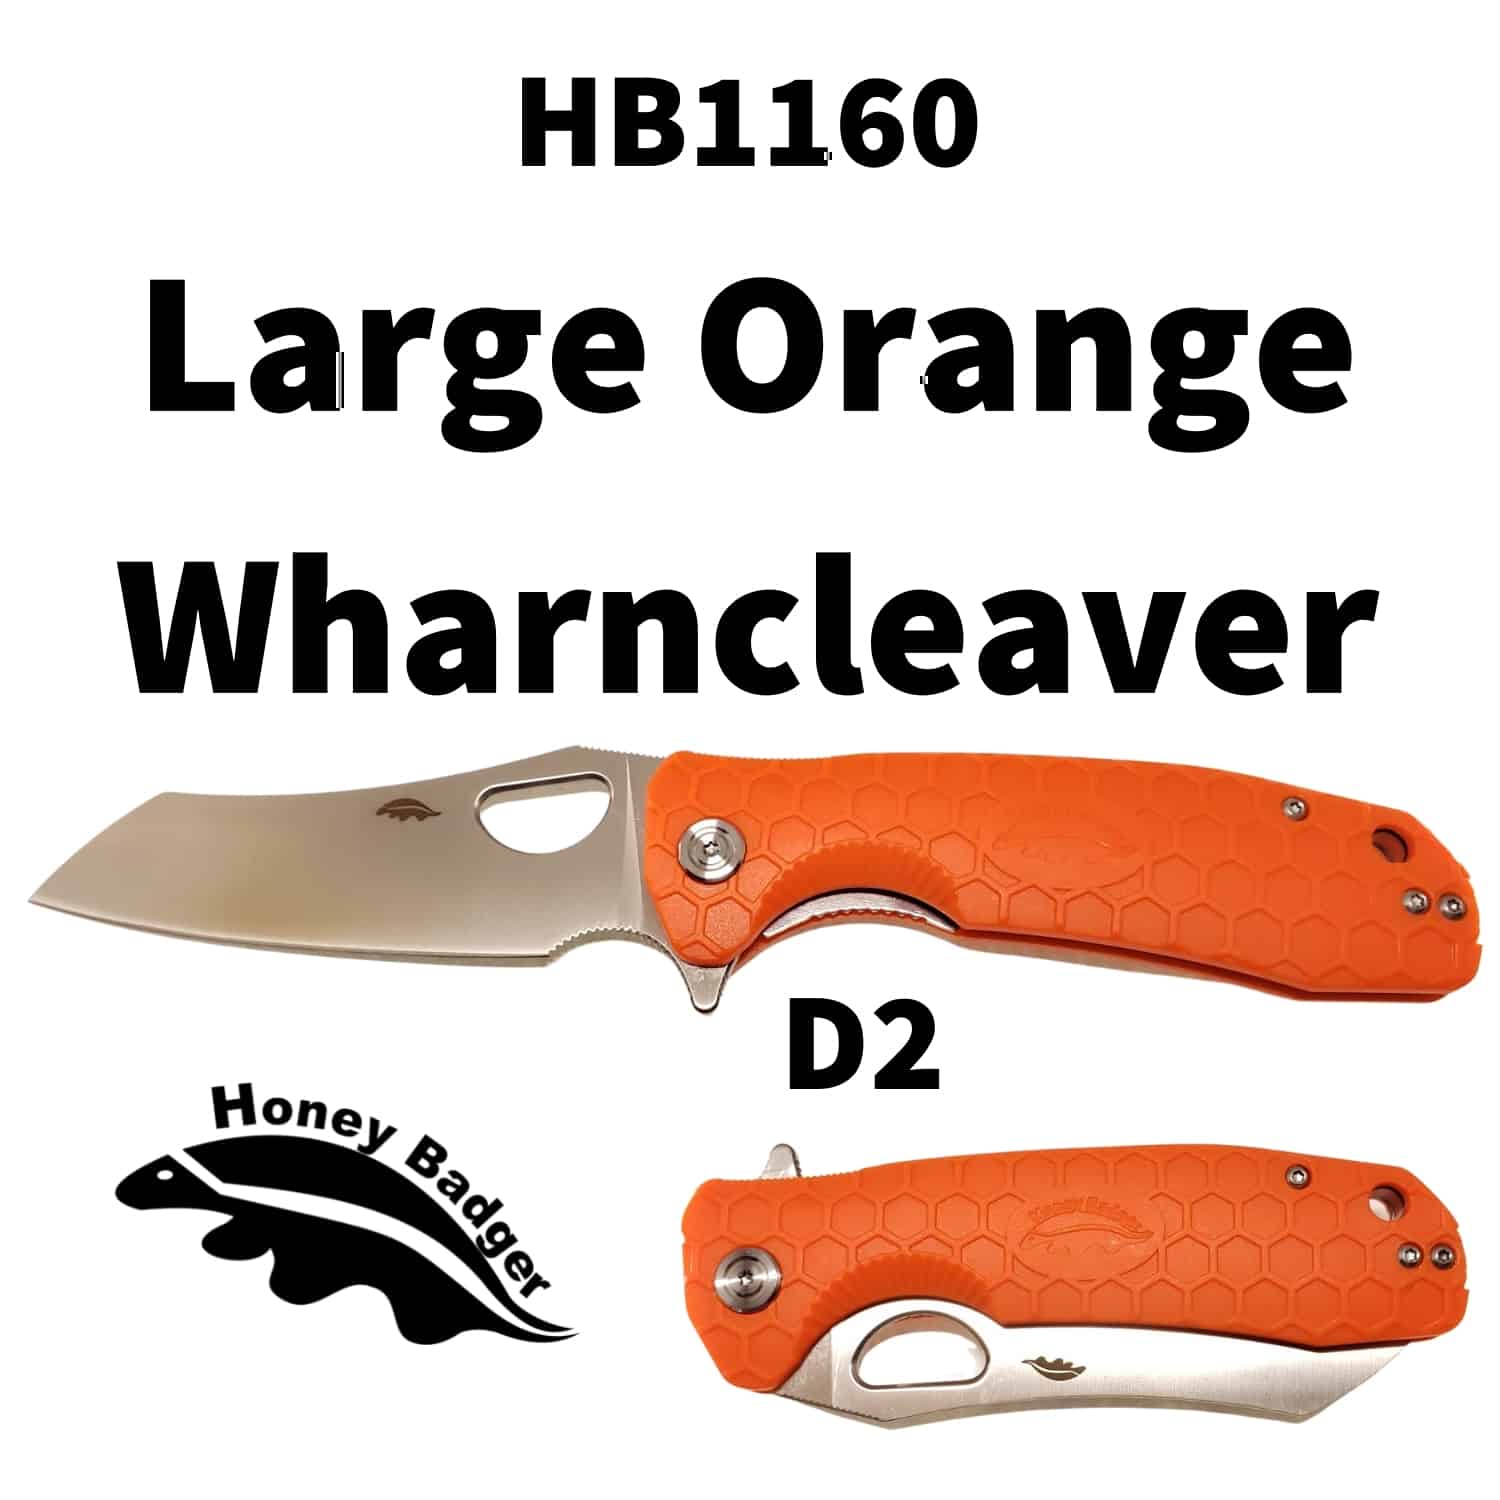 Wharn Cleaver Large Orange with Choil D2 (HB1160) Honey Badger Pocket  Knives. 8Cr13MoV, D2, 14C28N Budget EDC Flipper Pocket Knife with Pocket  Clips